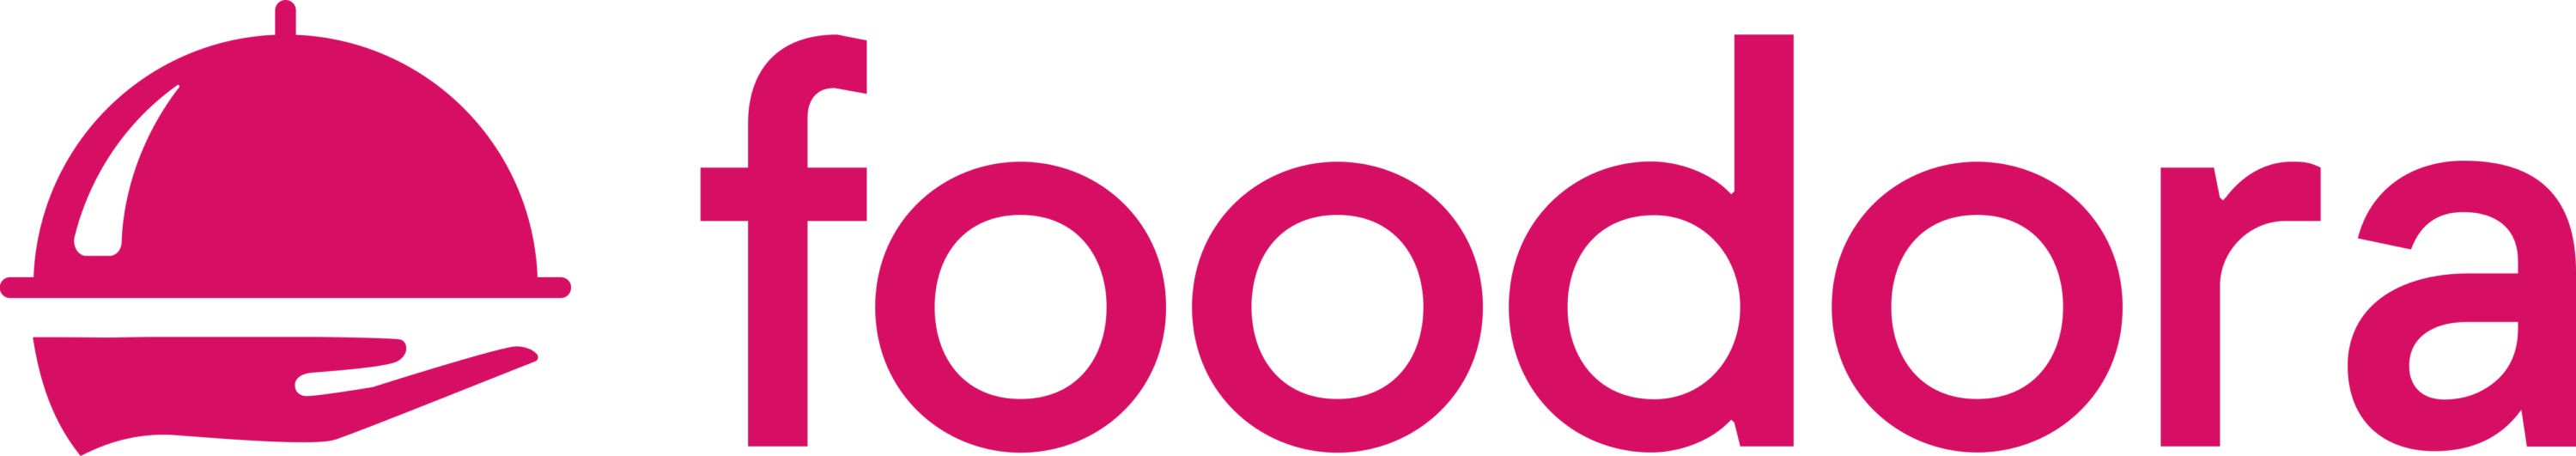 Foodora Logo